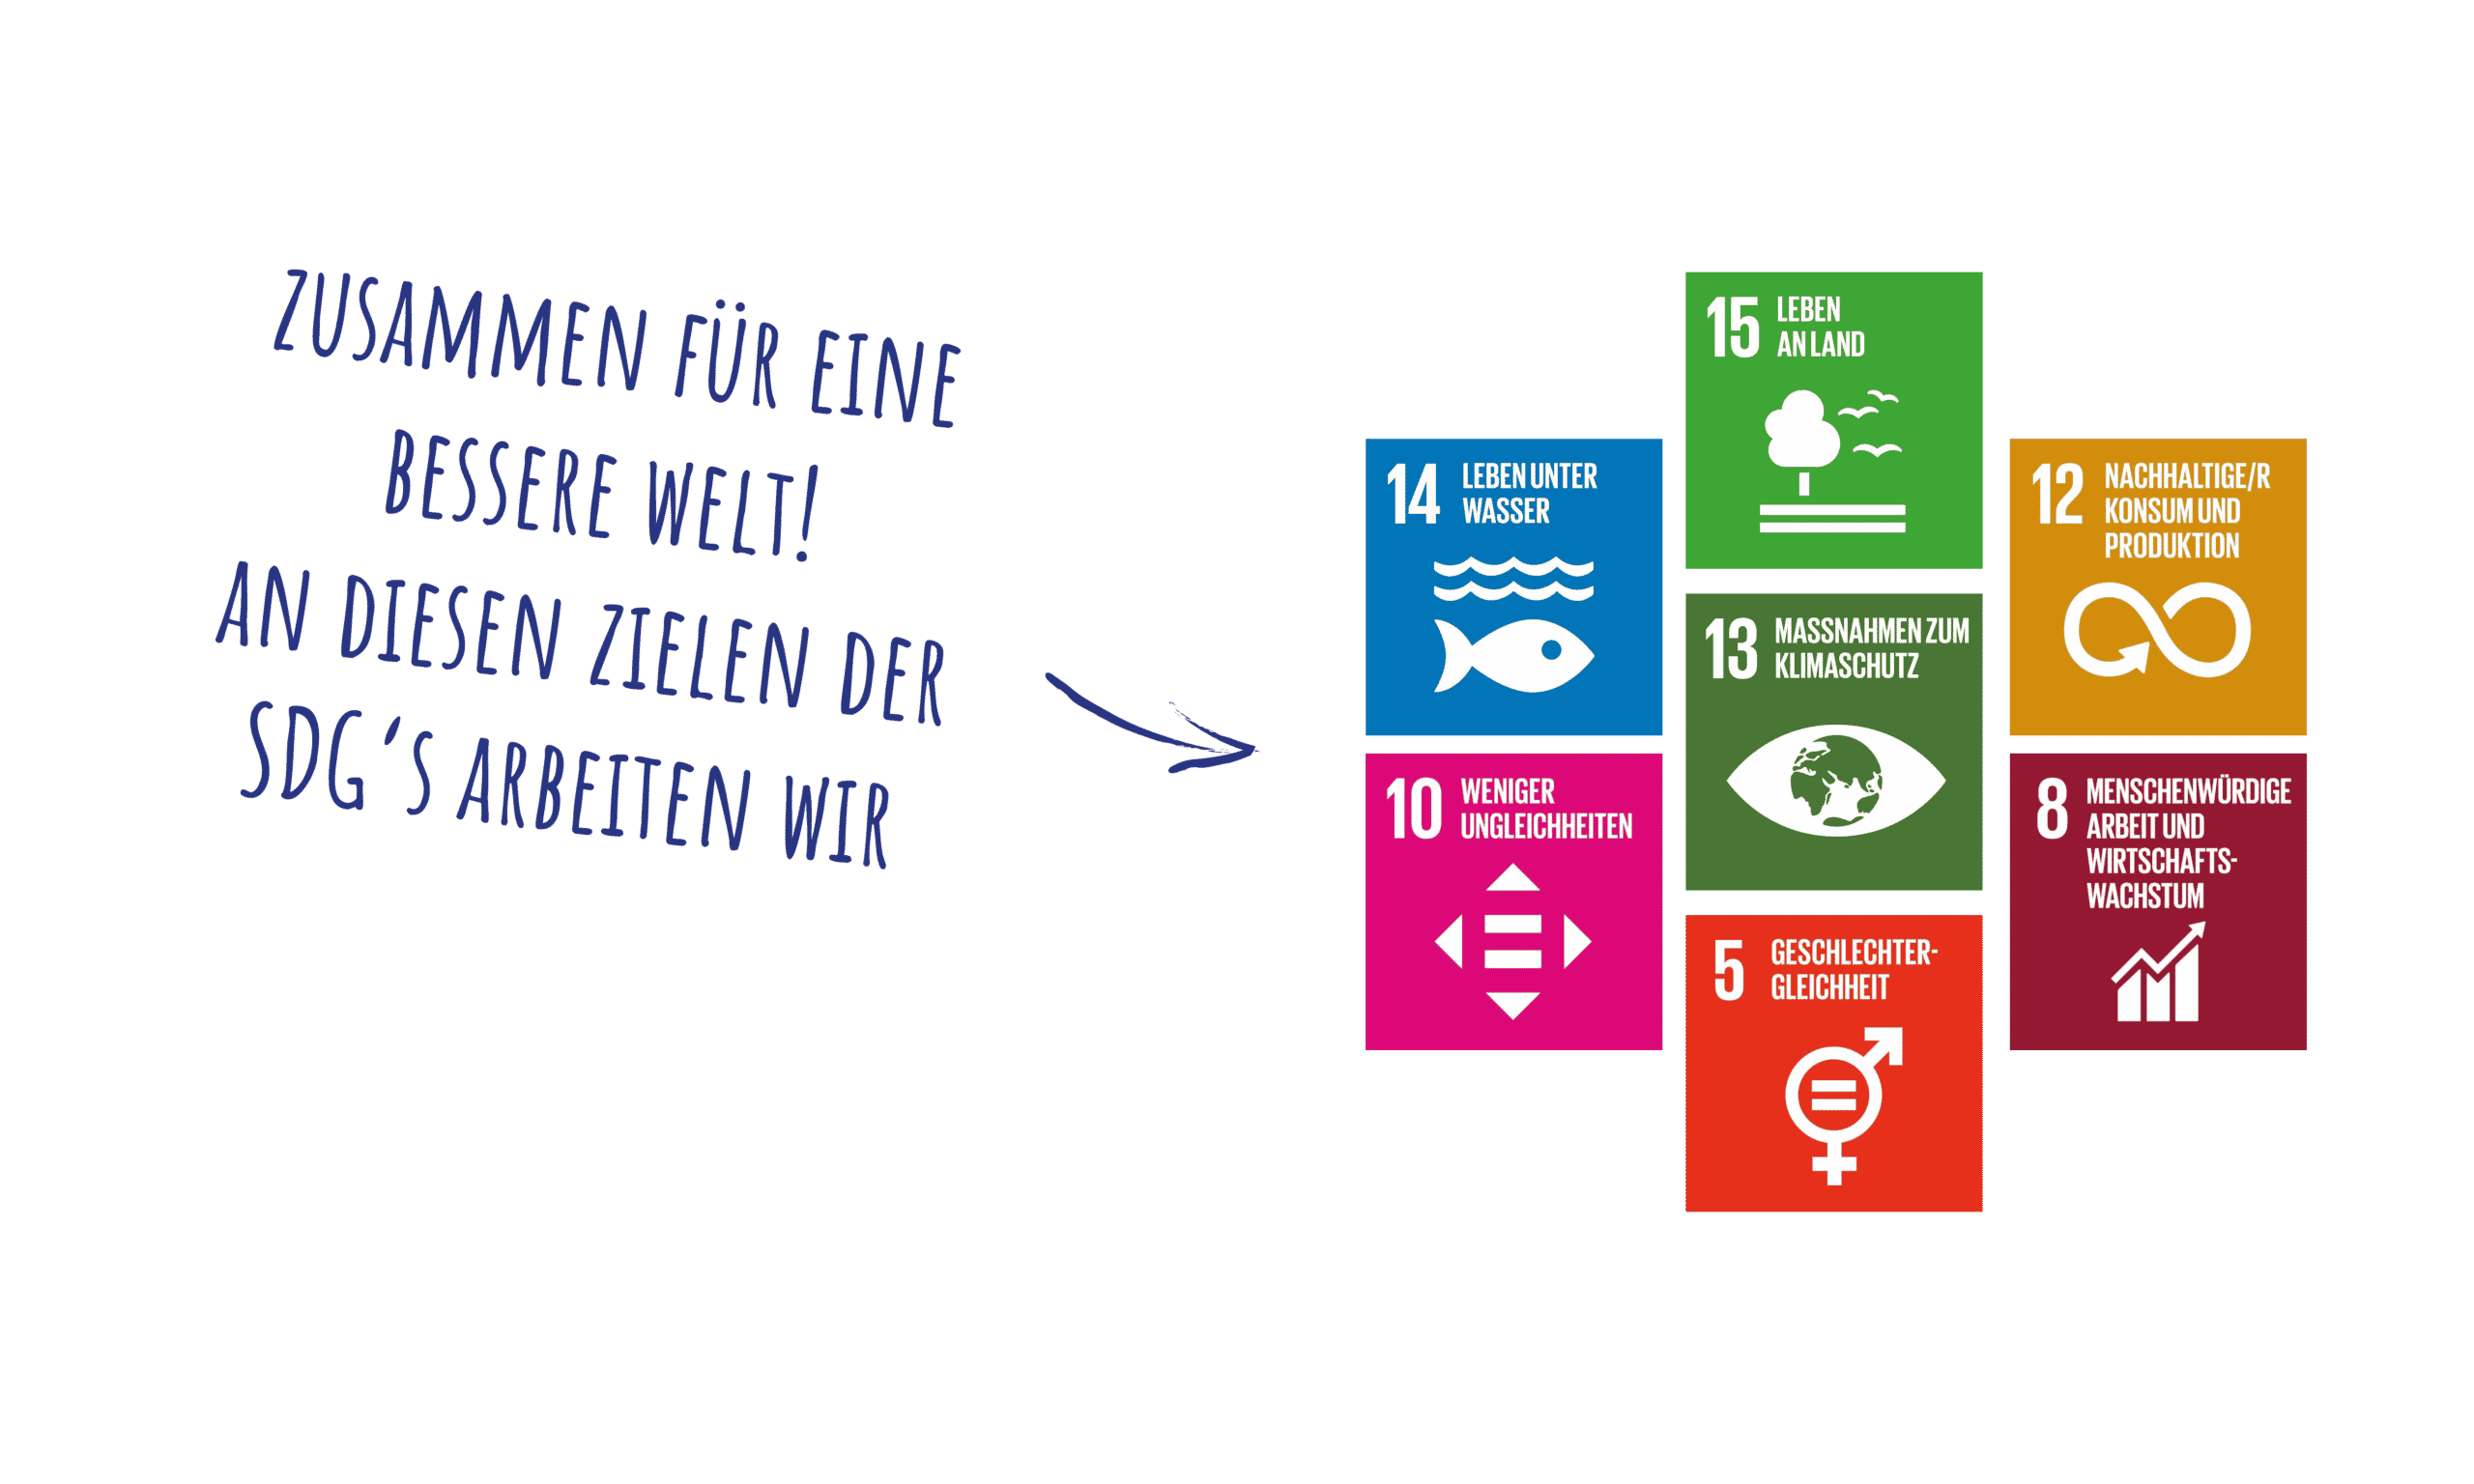 wir arbeiten an den zelen der SDG's: -weniger ungleichheiten -geschlechtergleichheit - menschenwürdige arbeit und wirtschaftswachstum - maßnahmen zum klimaschutz - nachhaltiger konsum und produktion - leben an land - leben unter wasser